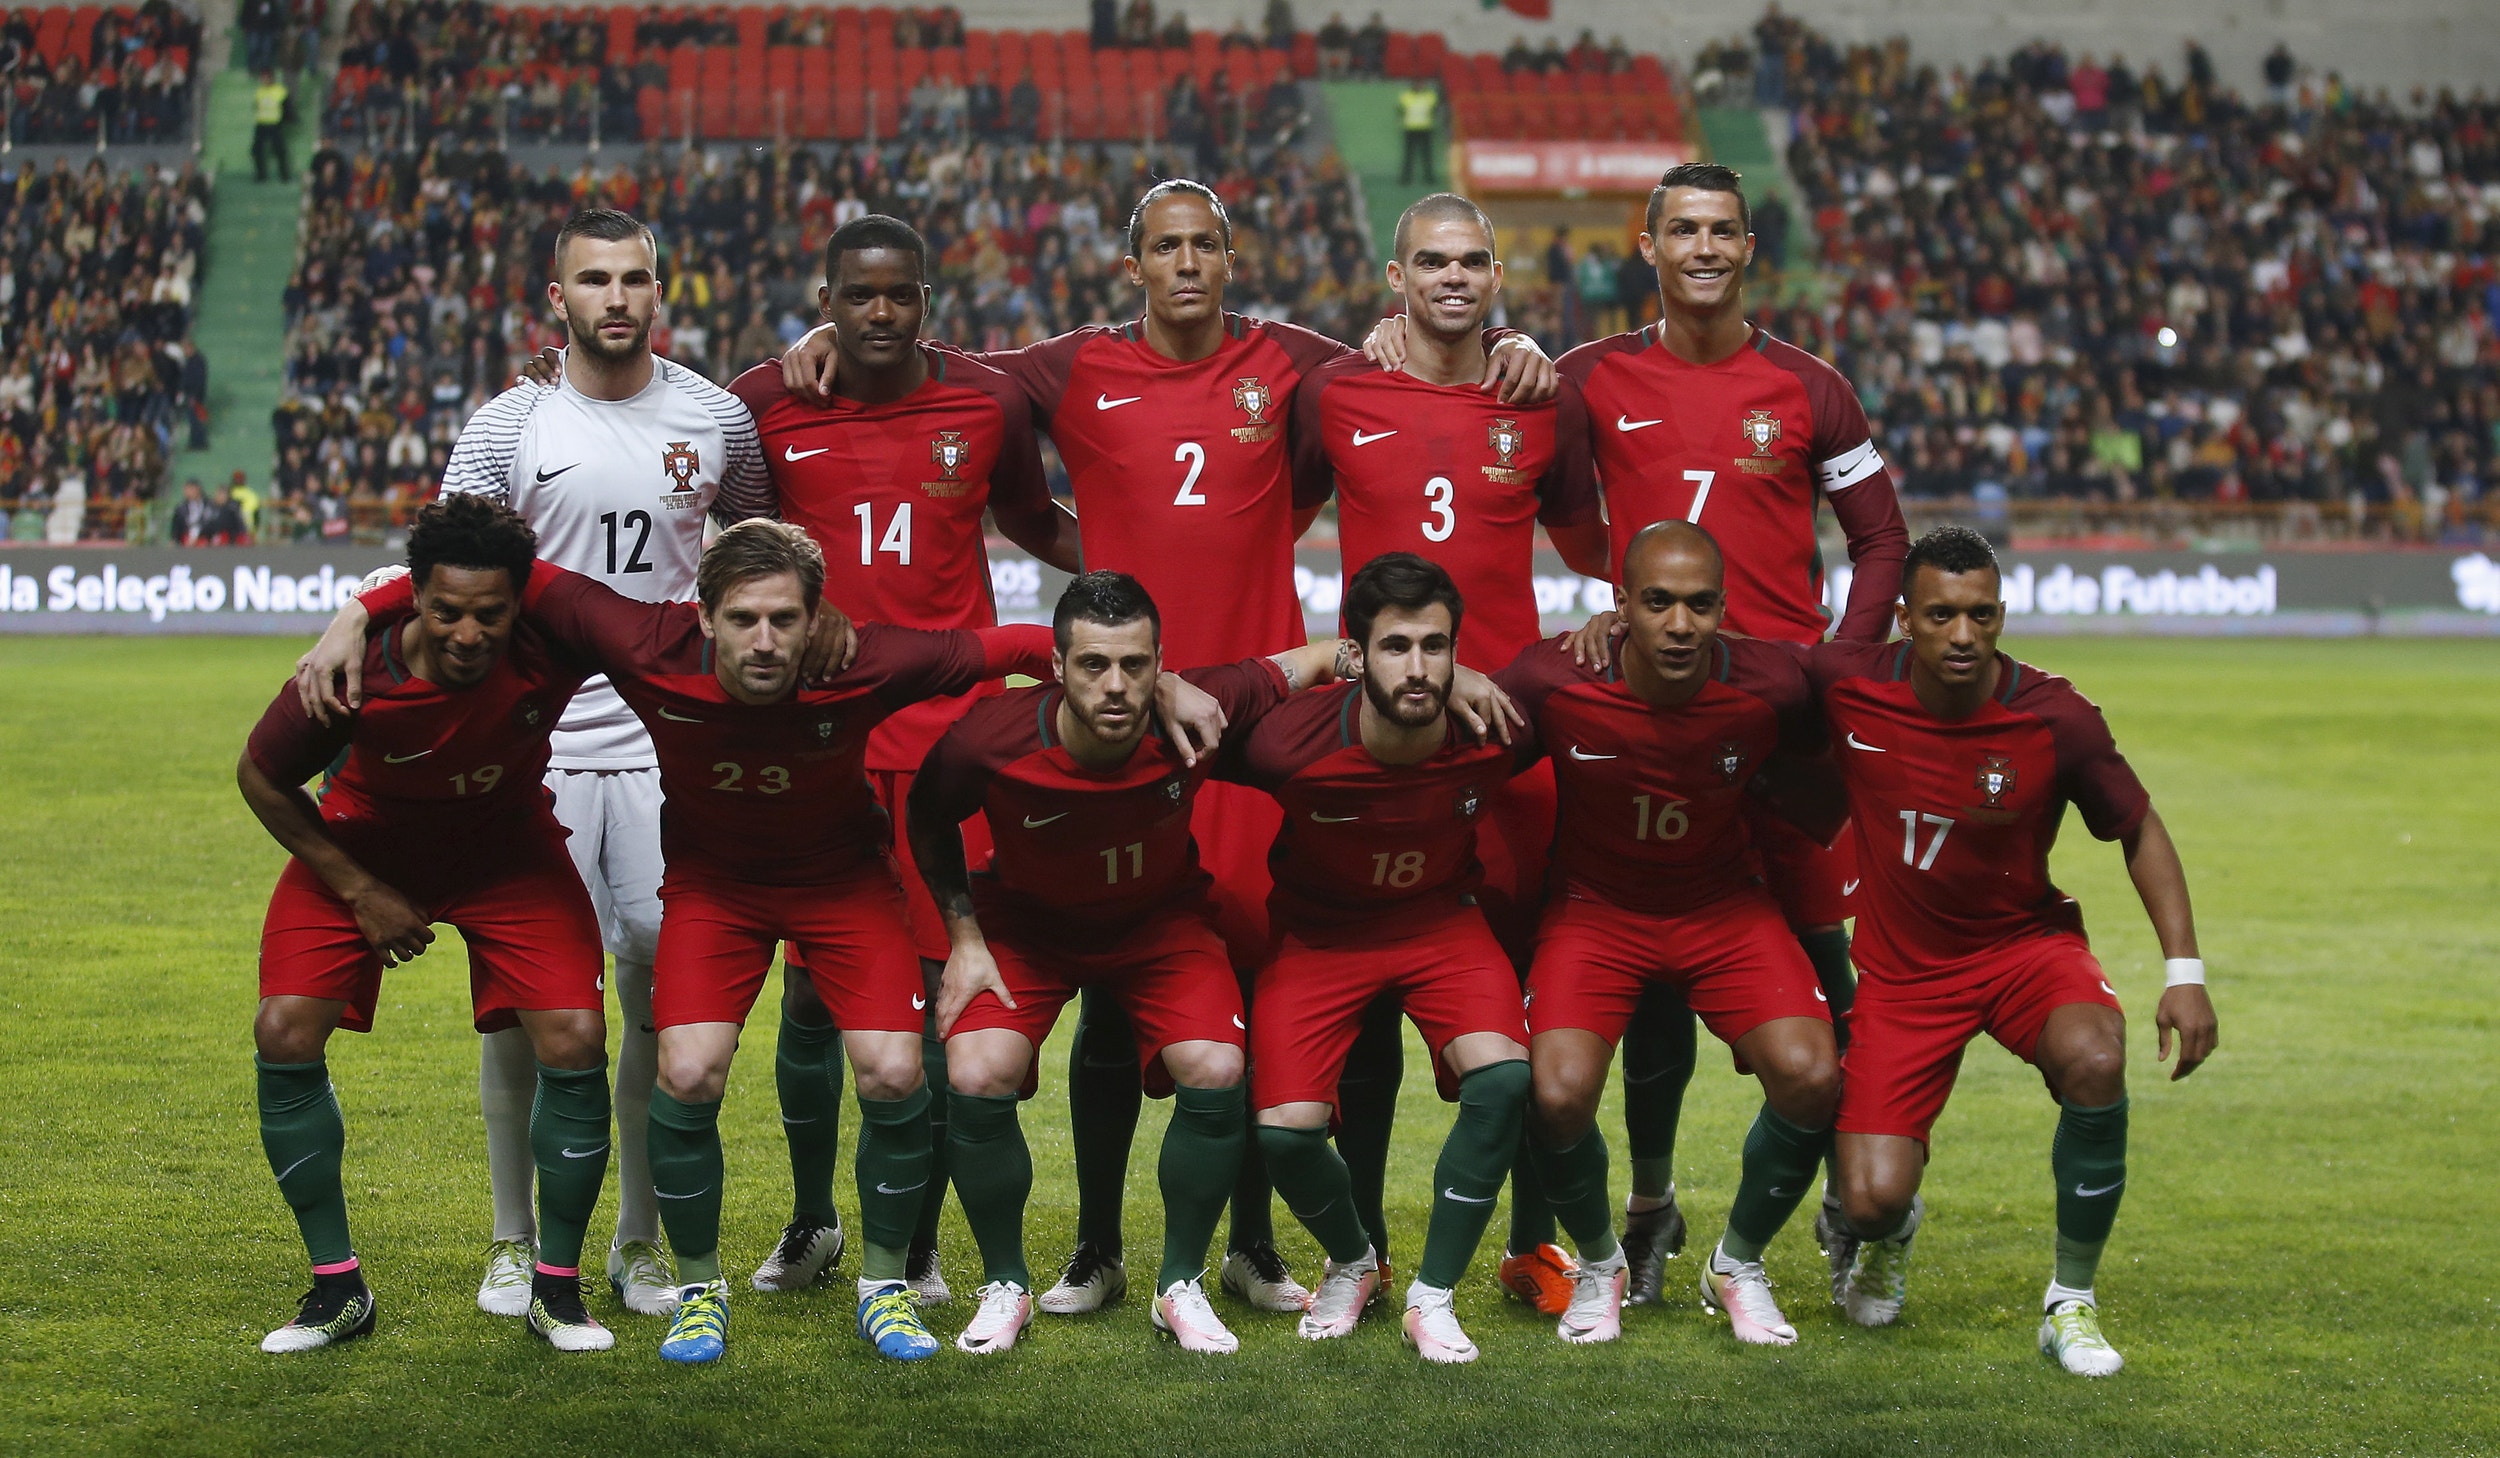 Seleção Portuguesa de Futebol 2016 - Knoow